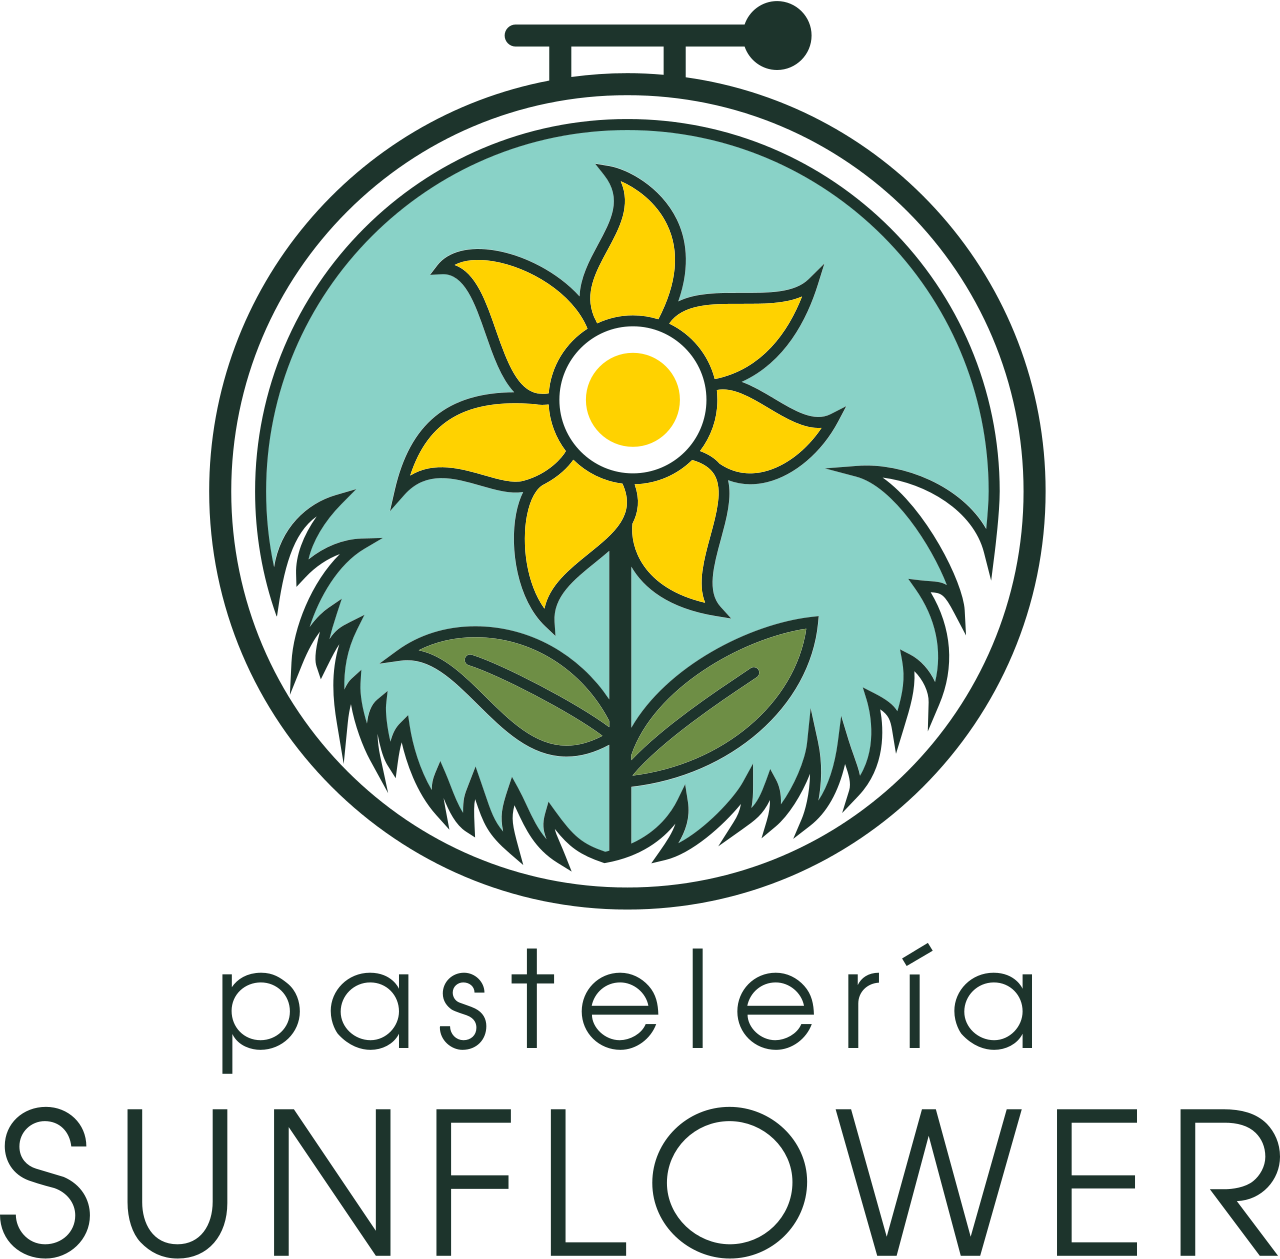 sunflower's logo